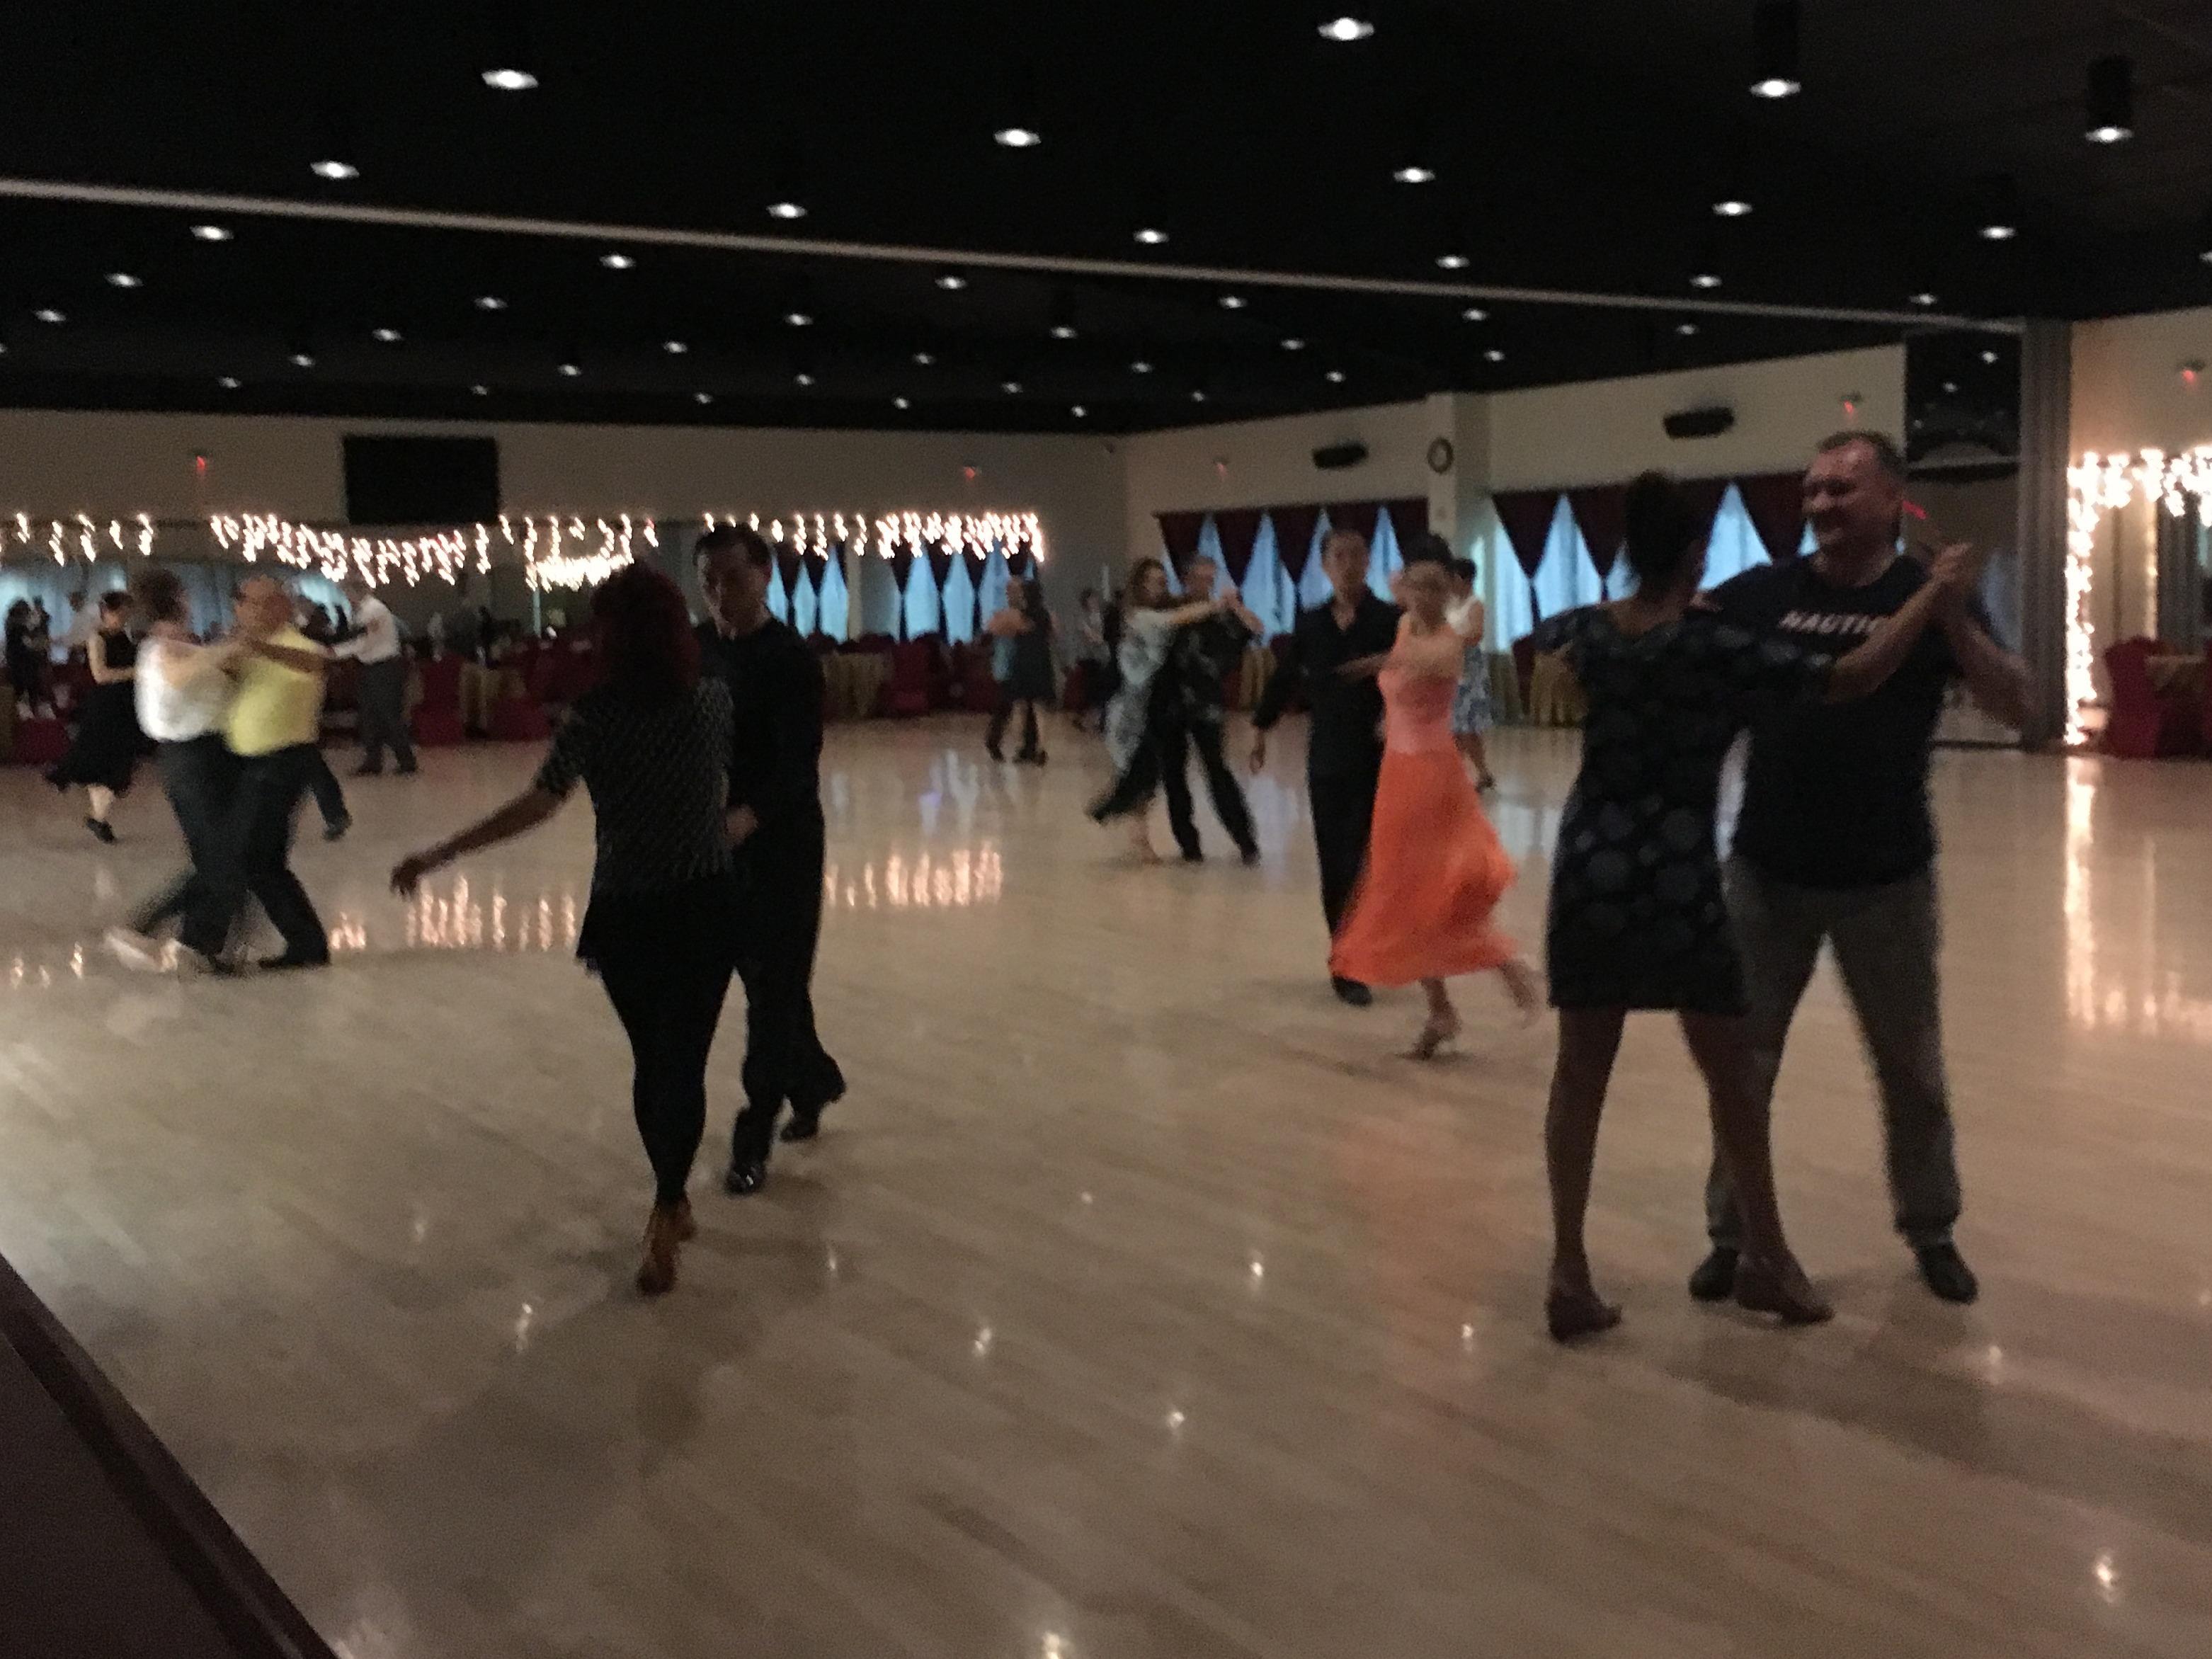 Friday Open Social Ballroom Dance